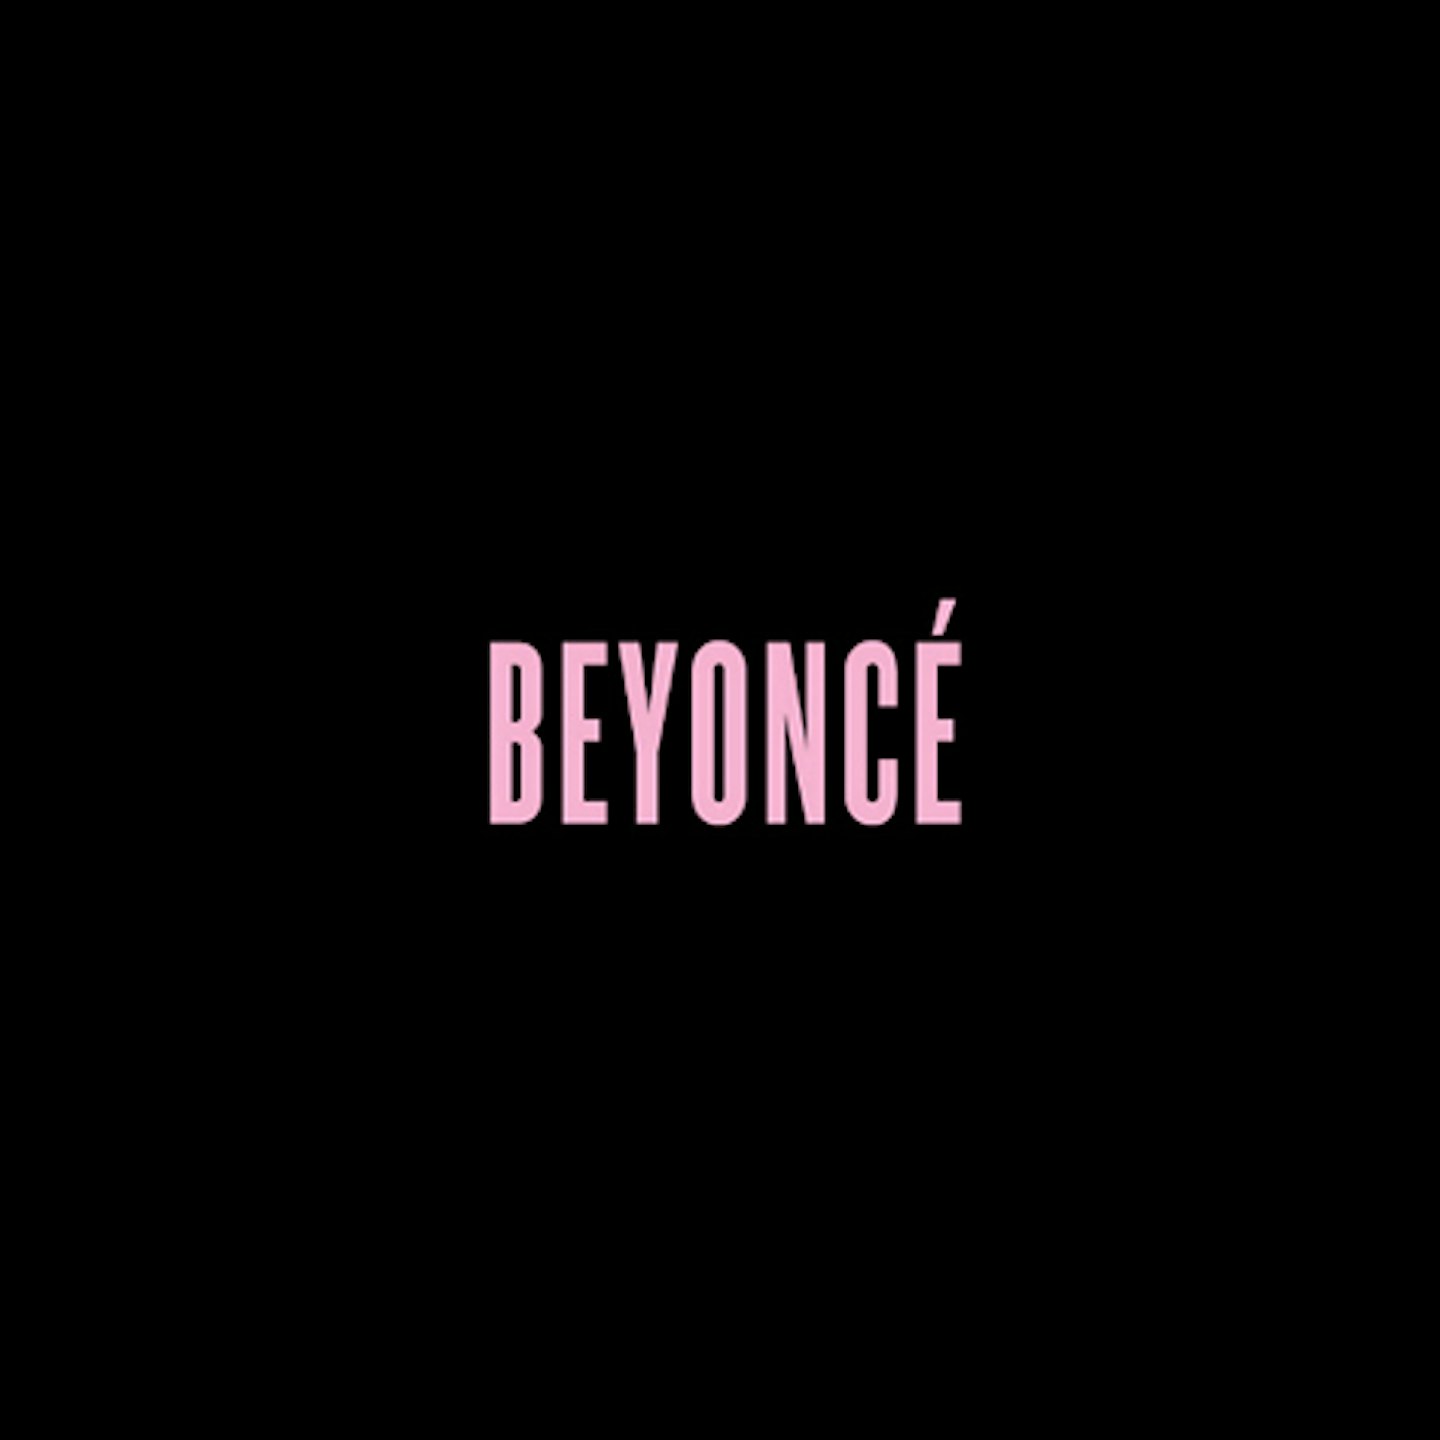 Beyoncé: Her Best Albums Ranked